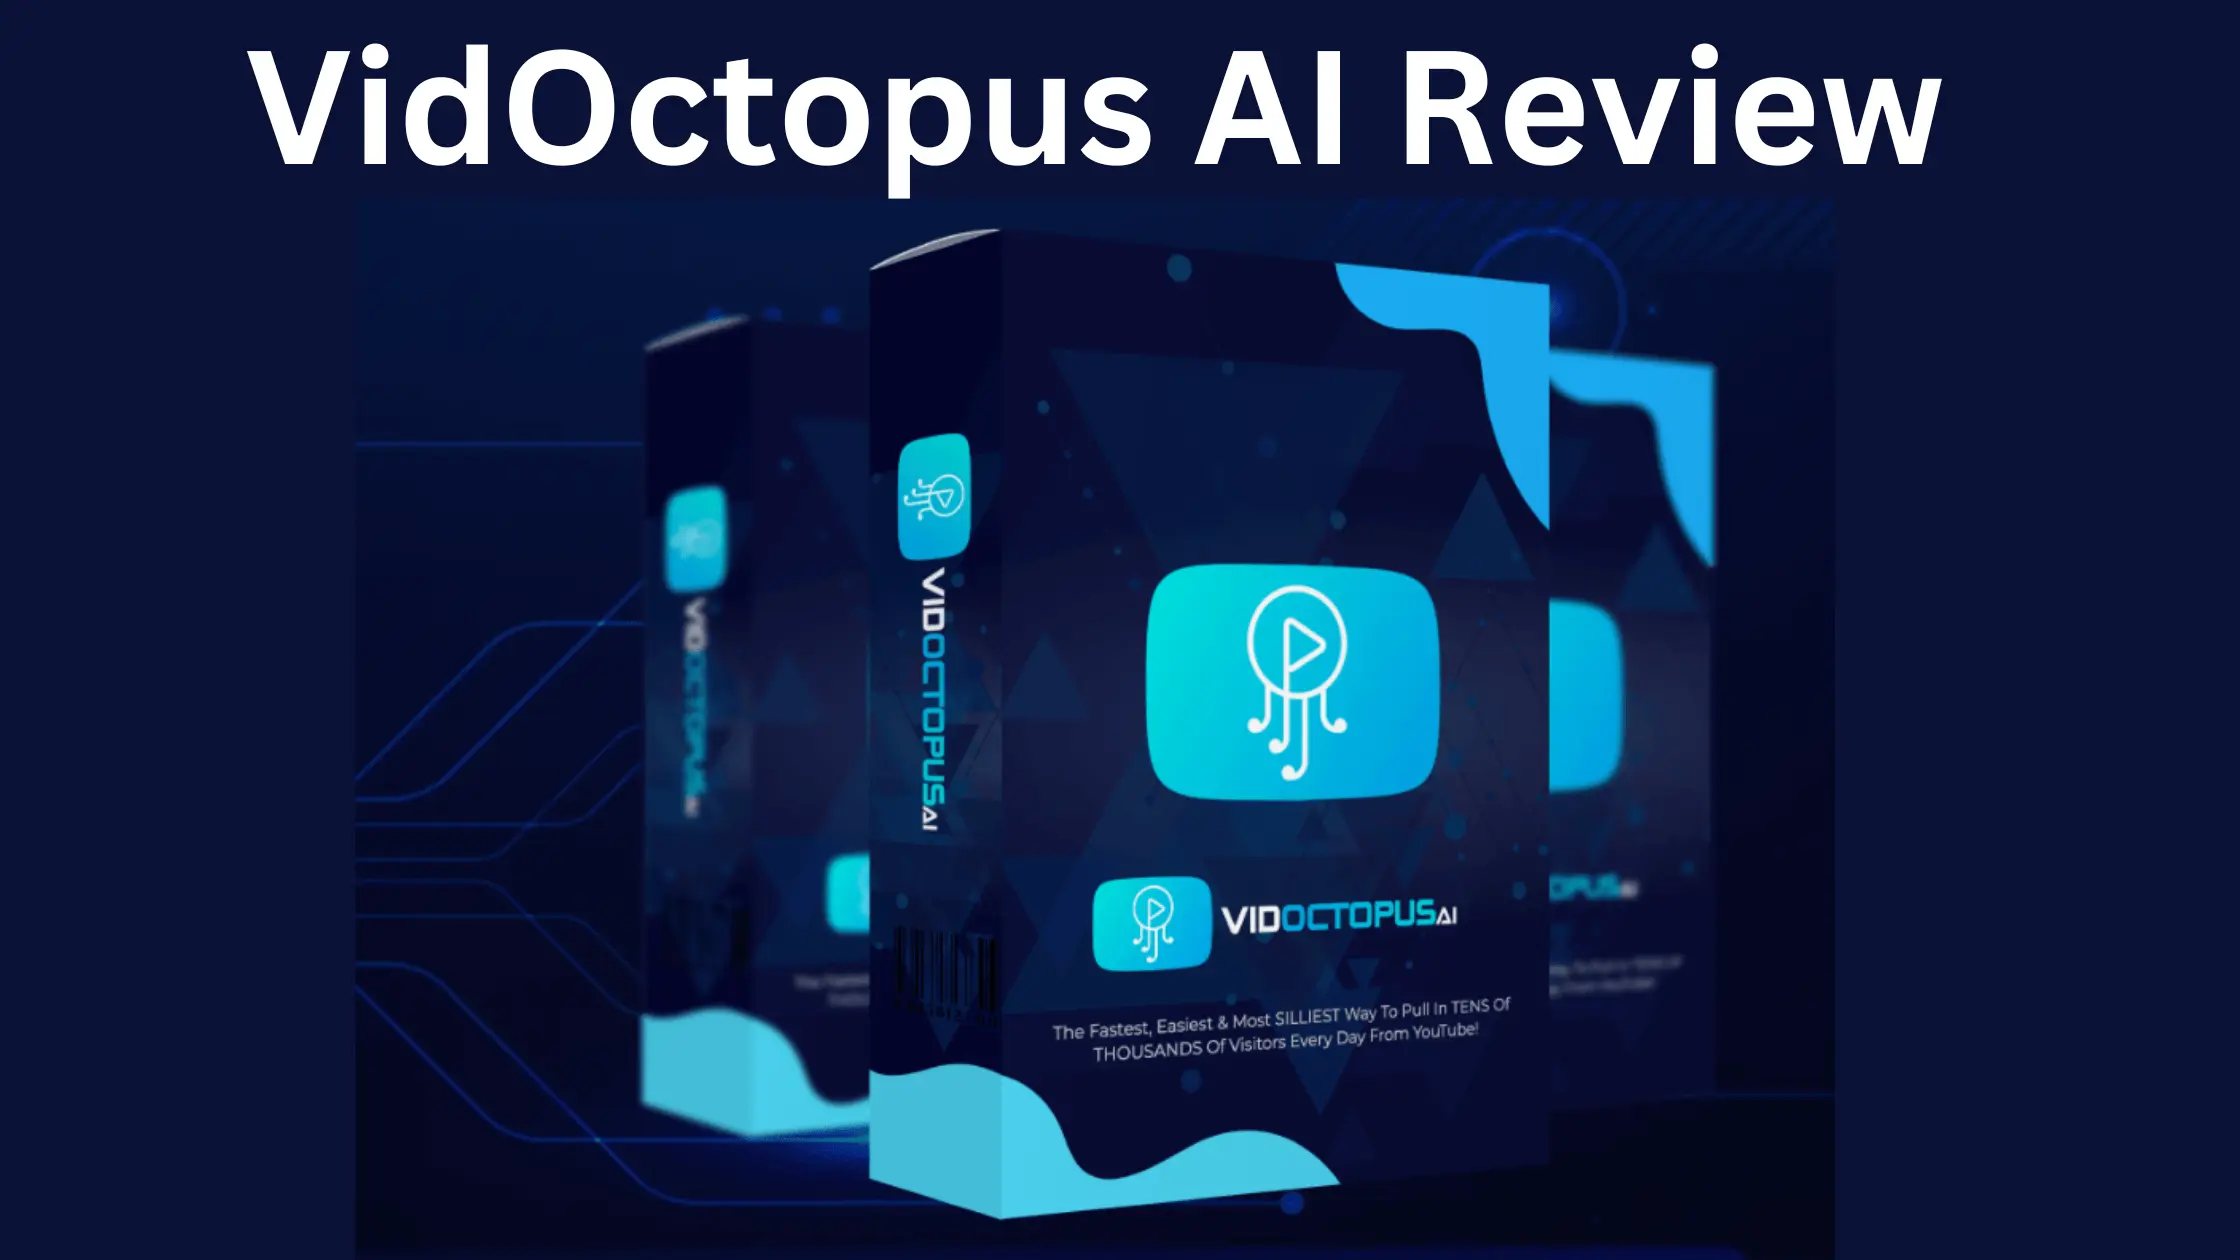 VidOctopus AI Review